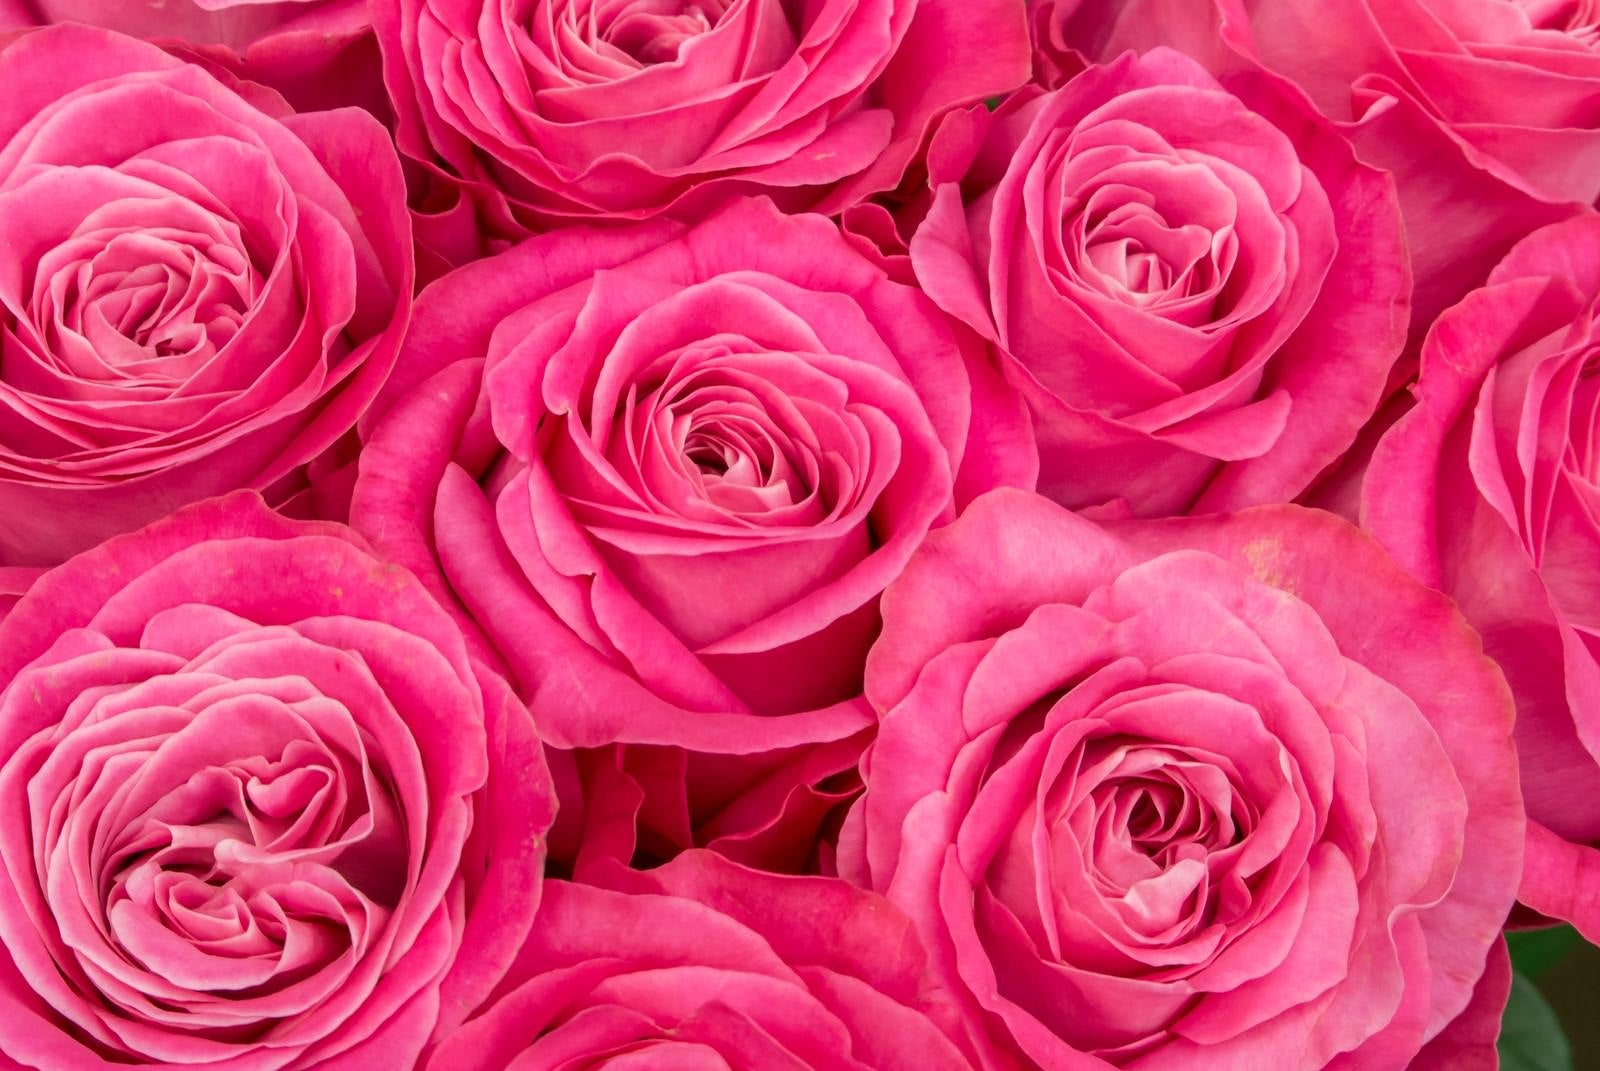 「ピンク色の薔薇の花」の写真